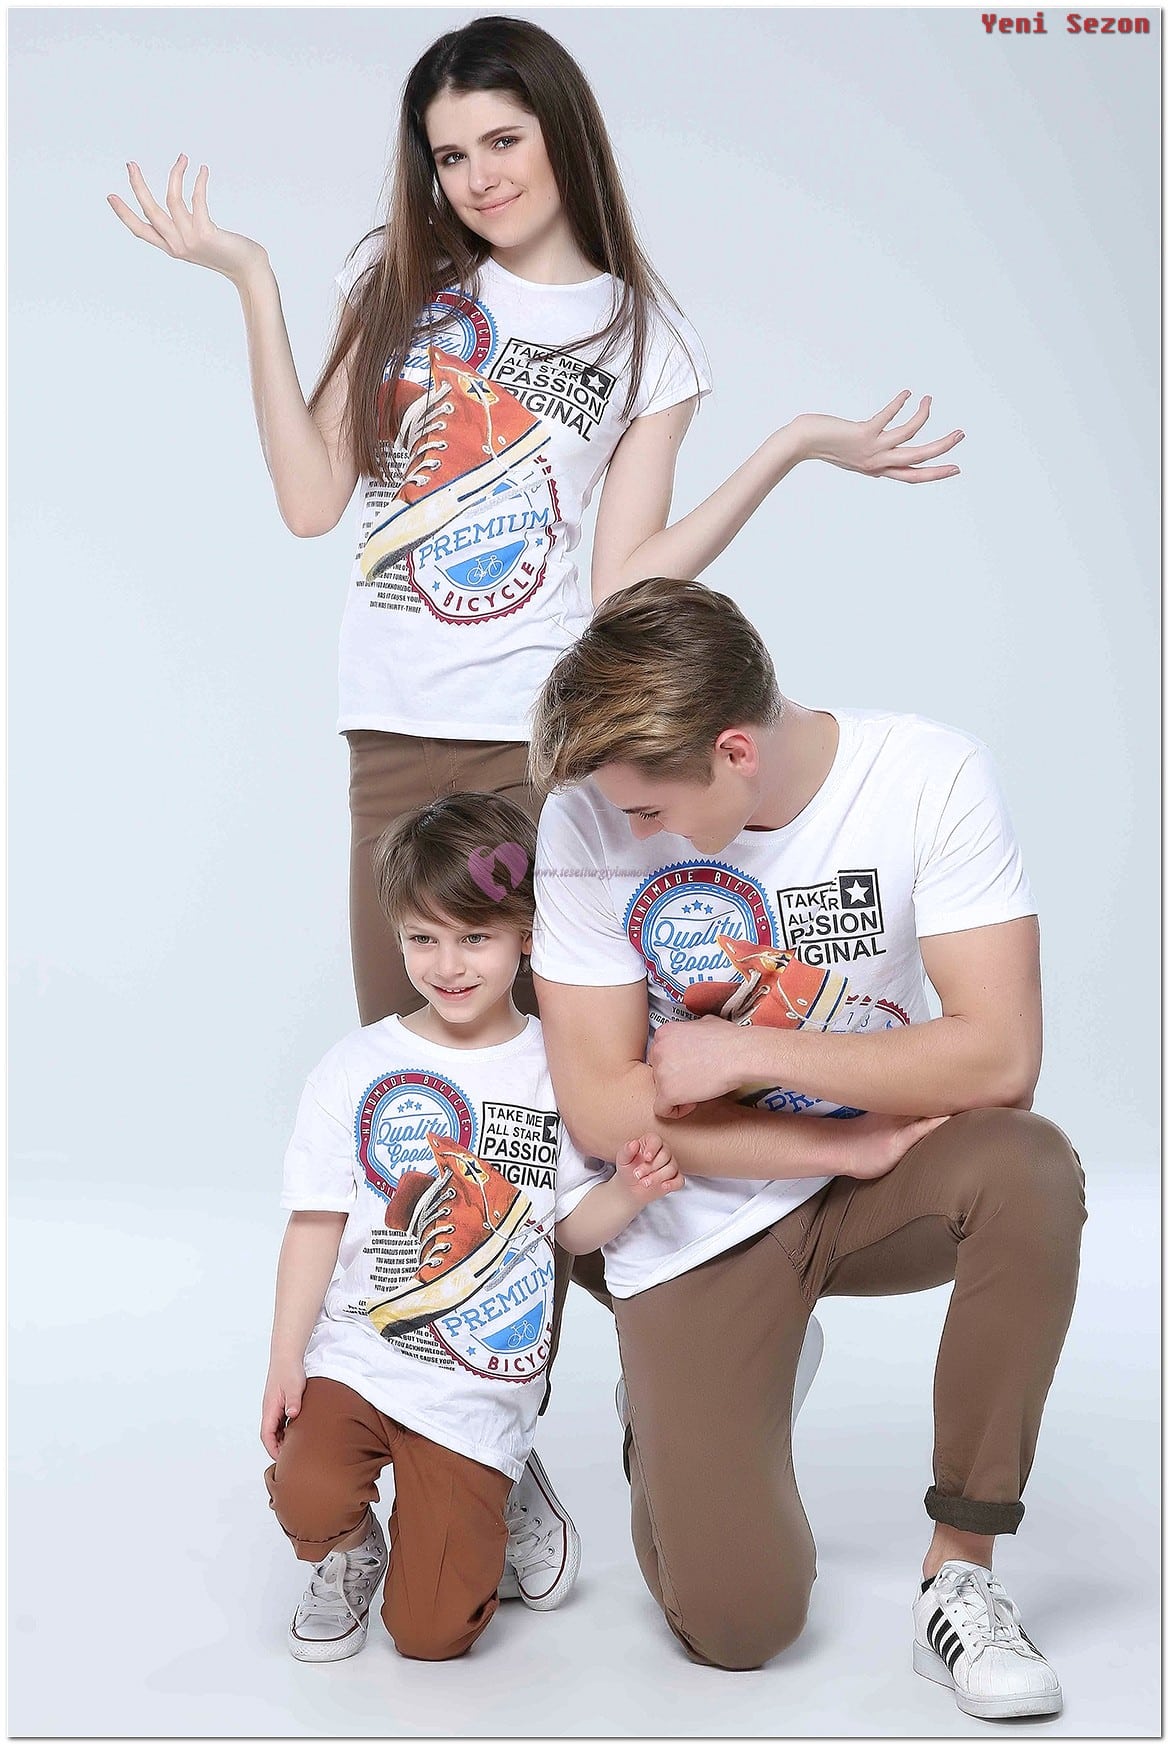 Yeni Sezon Aile Boyu Giyim Modelleri